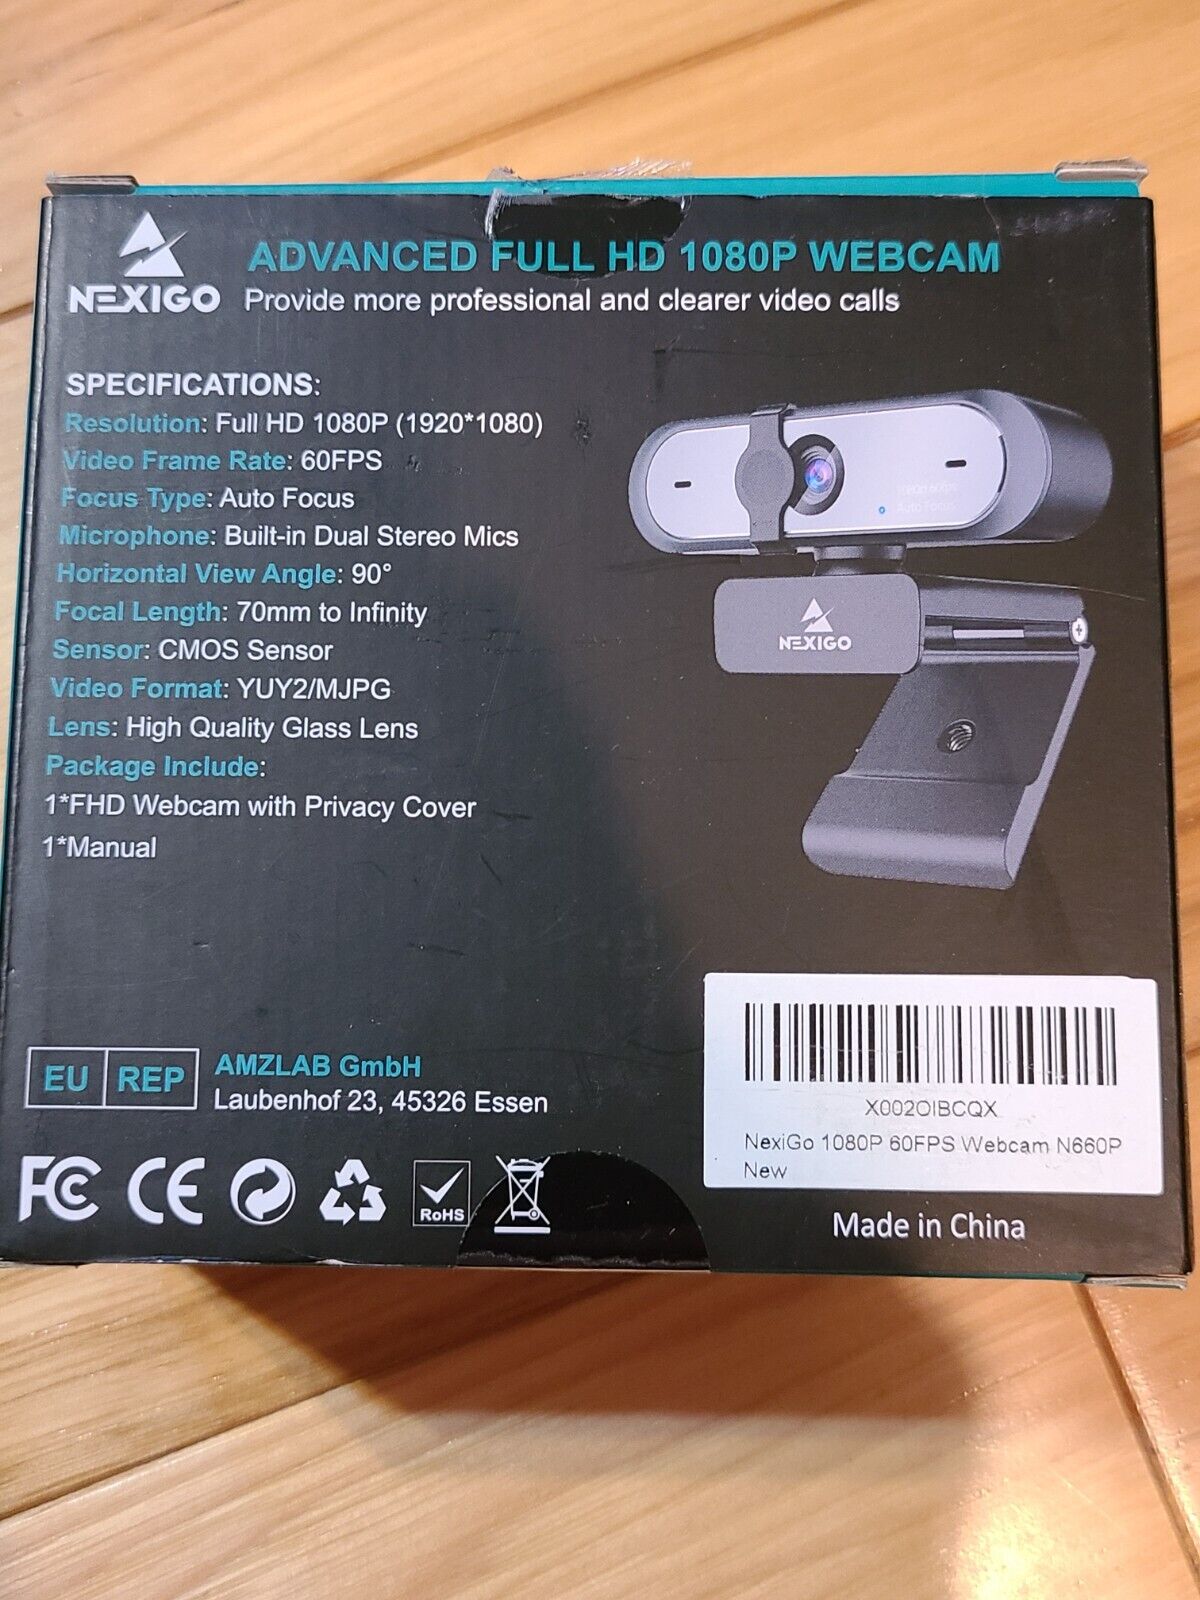 NexiGo N660P 1080P 60FPS Webcam with Software Control